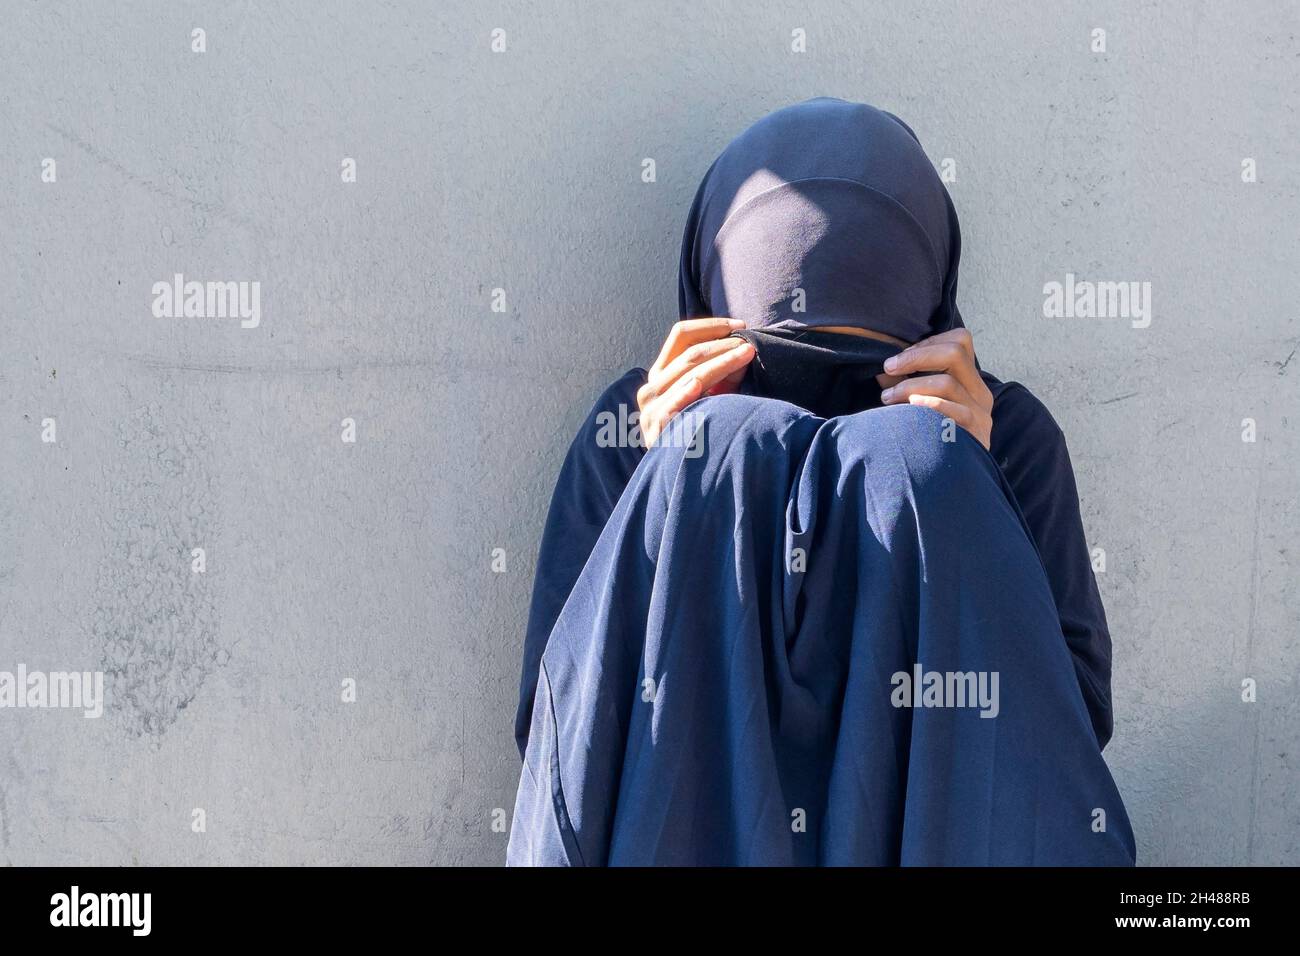 Fille musulmane, femme assise dans une rue de la ville.Femme pauvre musulmane à visage fermé mendiant pour les aumône. Banque D'Images